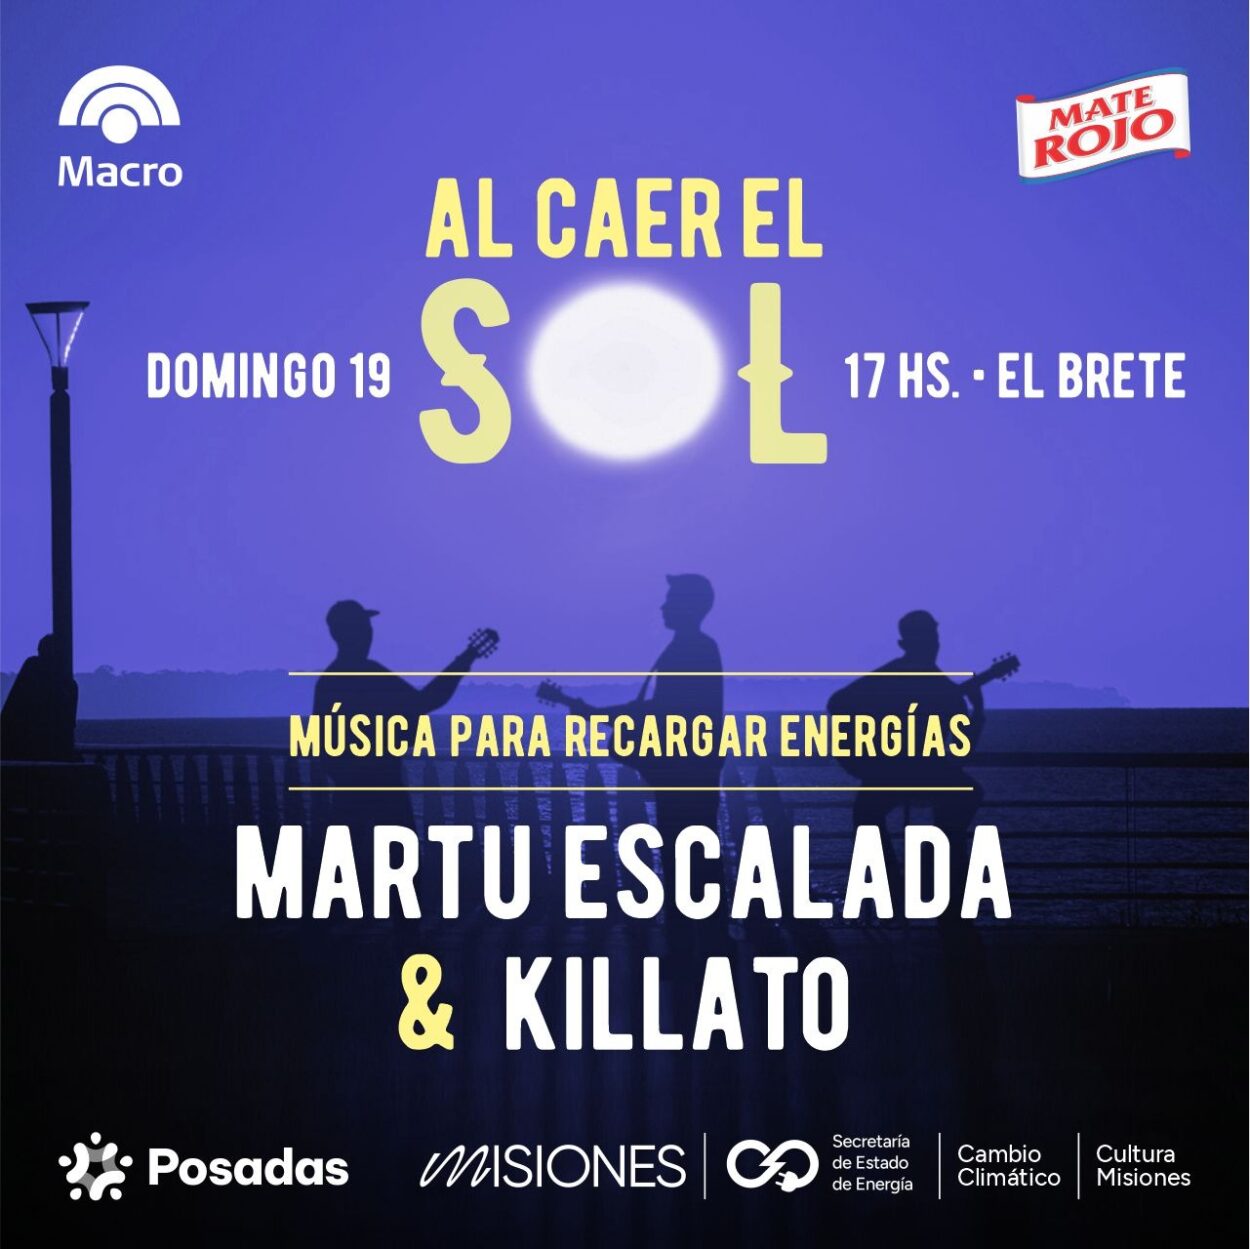 Martu Escalada y Killato: rock y música urbana este domingo “Al caer el sol en El Brete” imagen-10